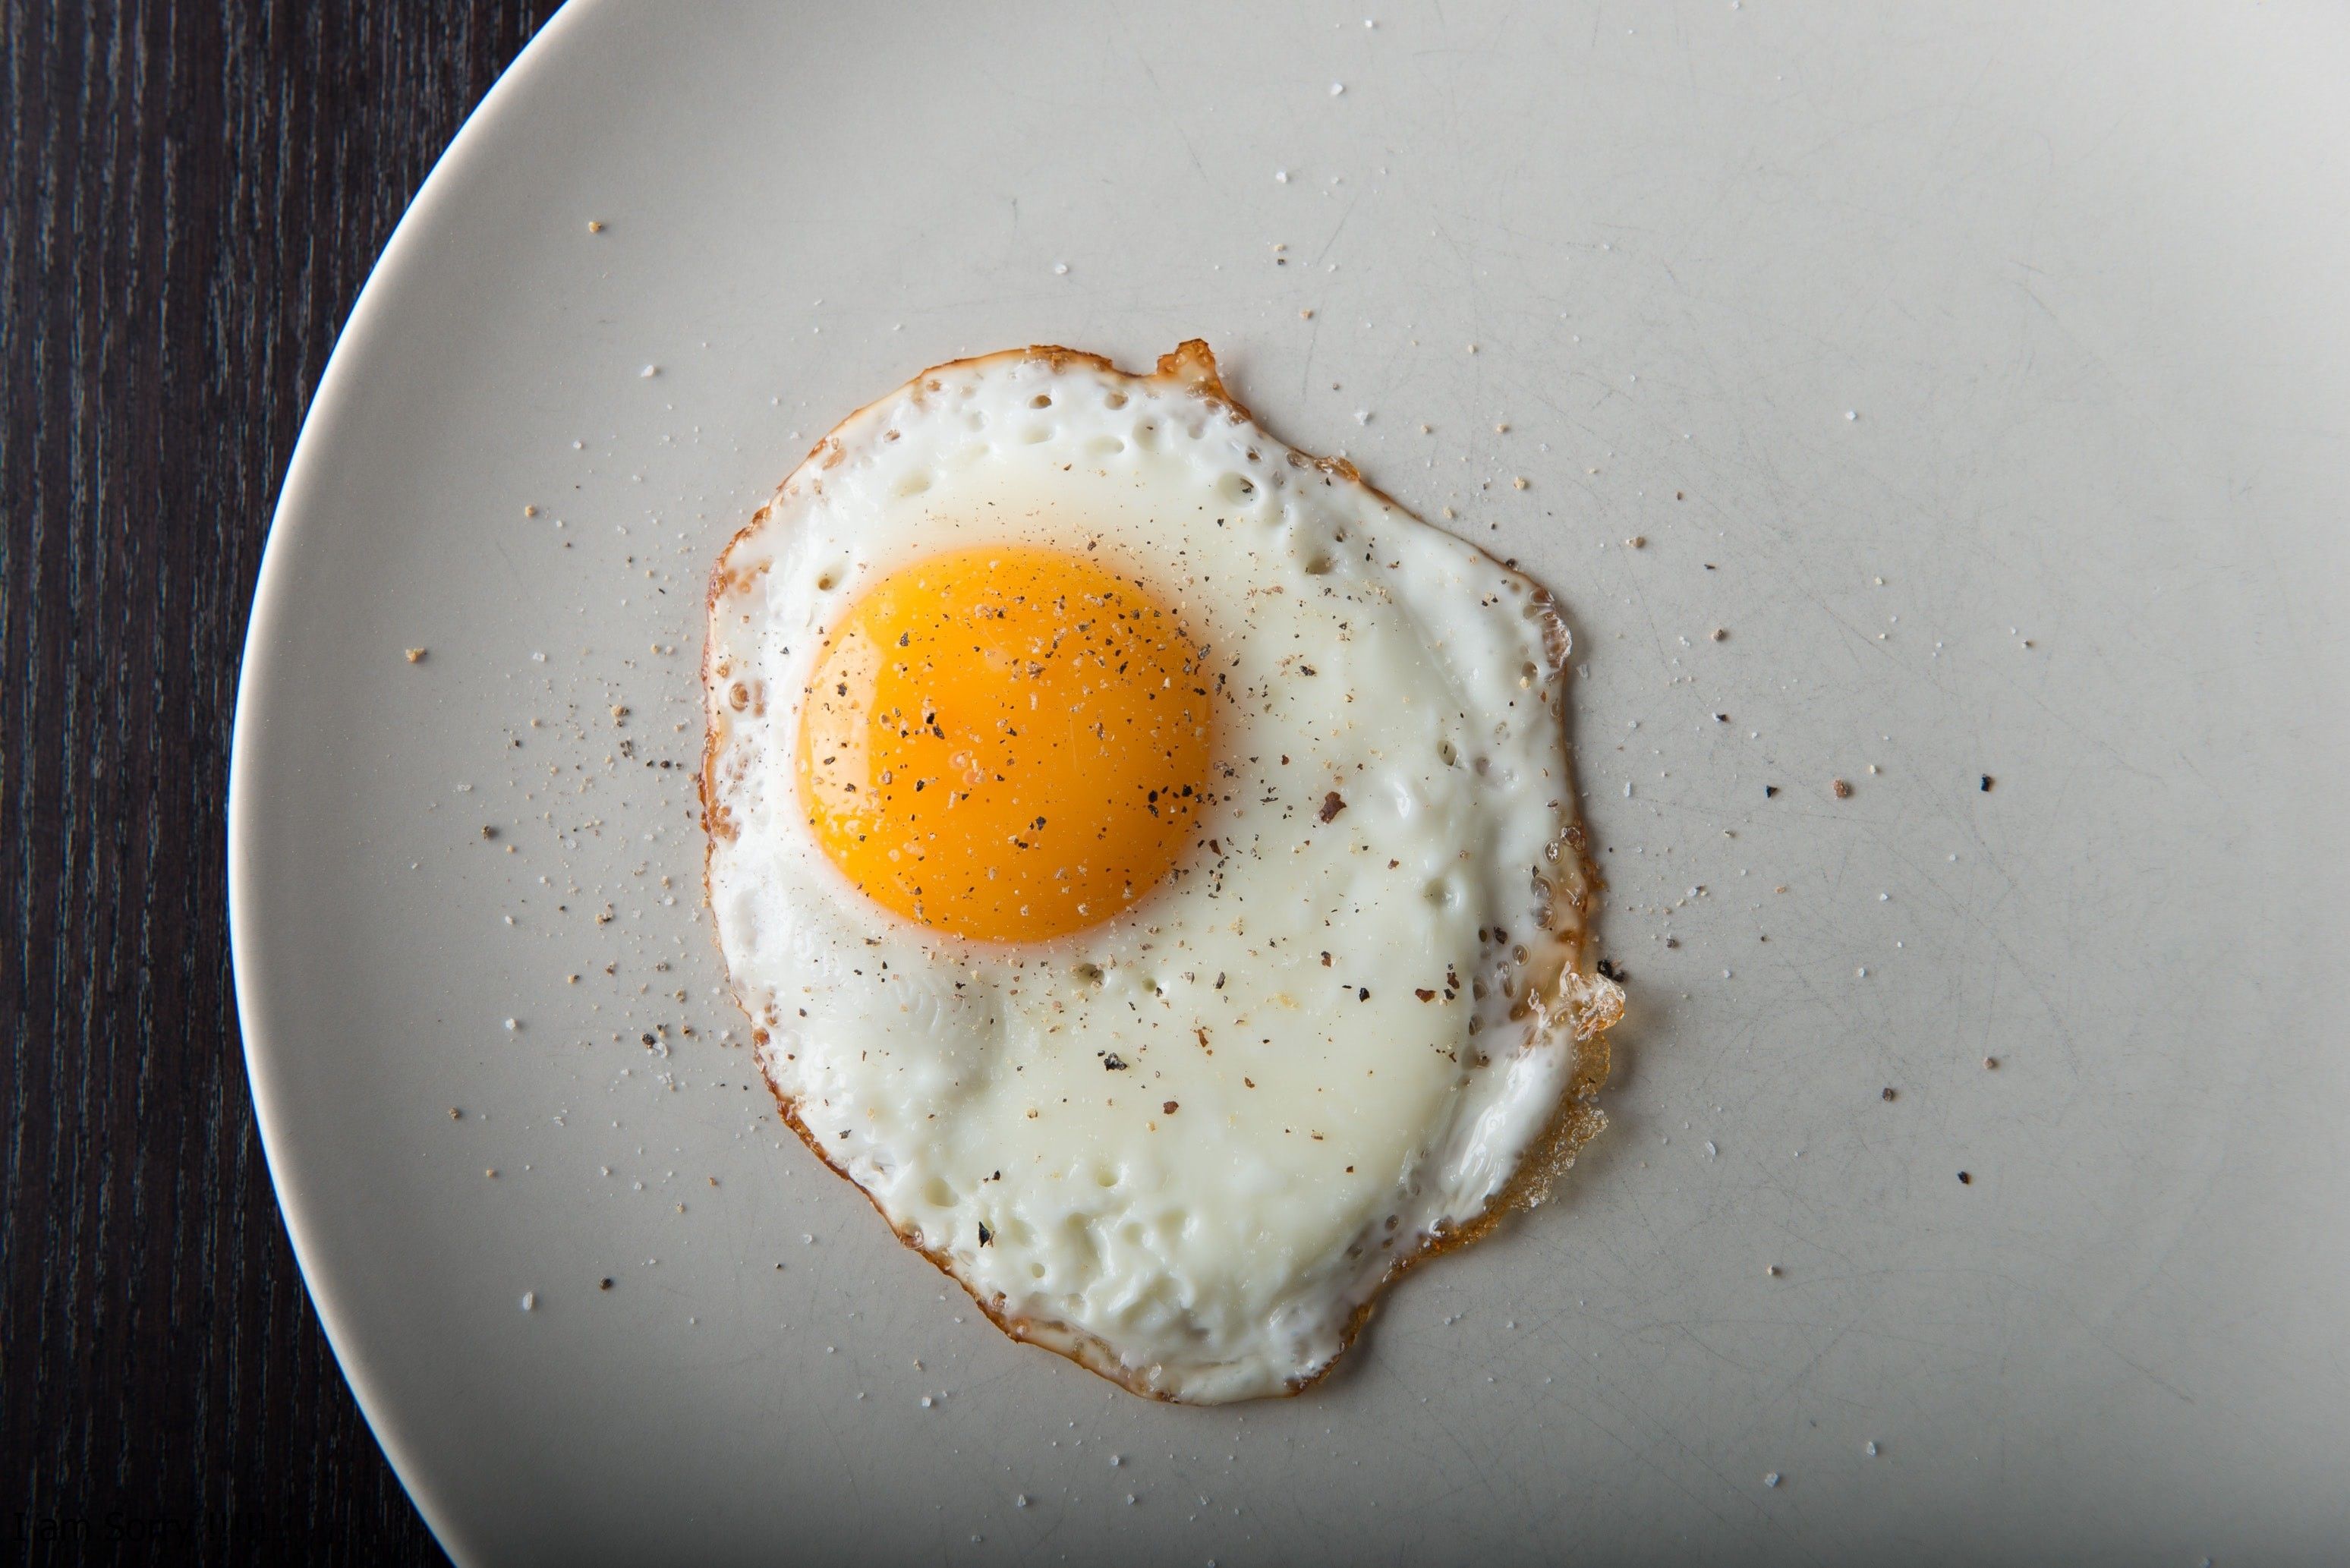 Huevos fritos en microondas, ¡fáciles, sanos y ricos! - PequeRecetas